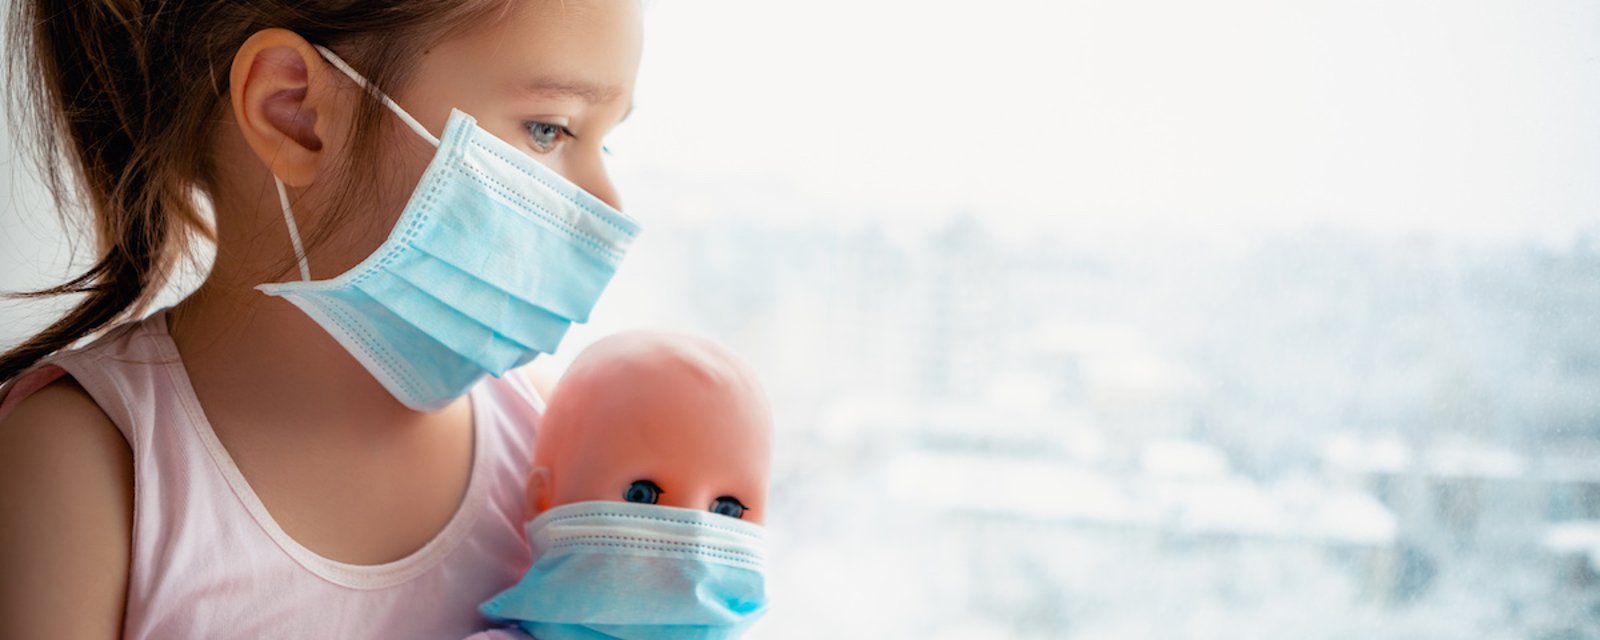 COVID-19: les enfants résistent plus à la contamination